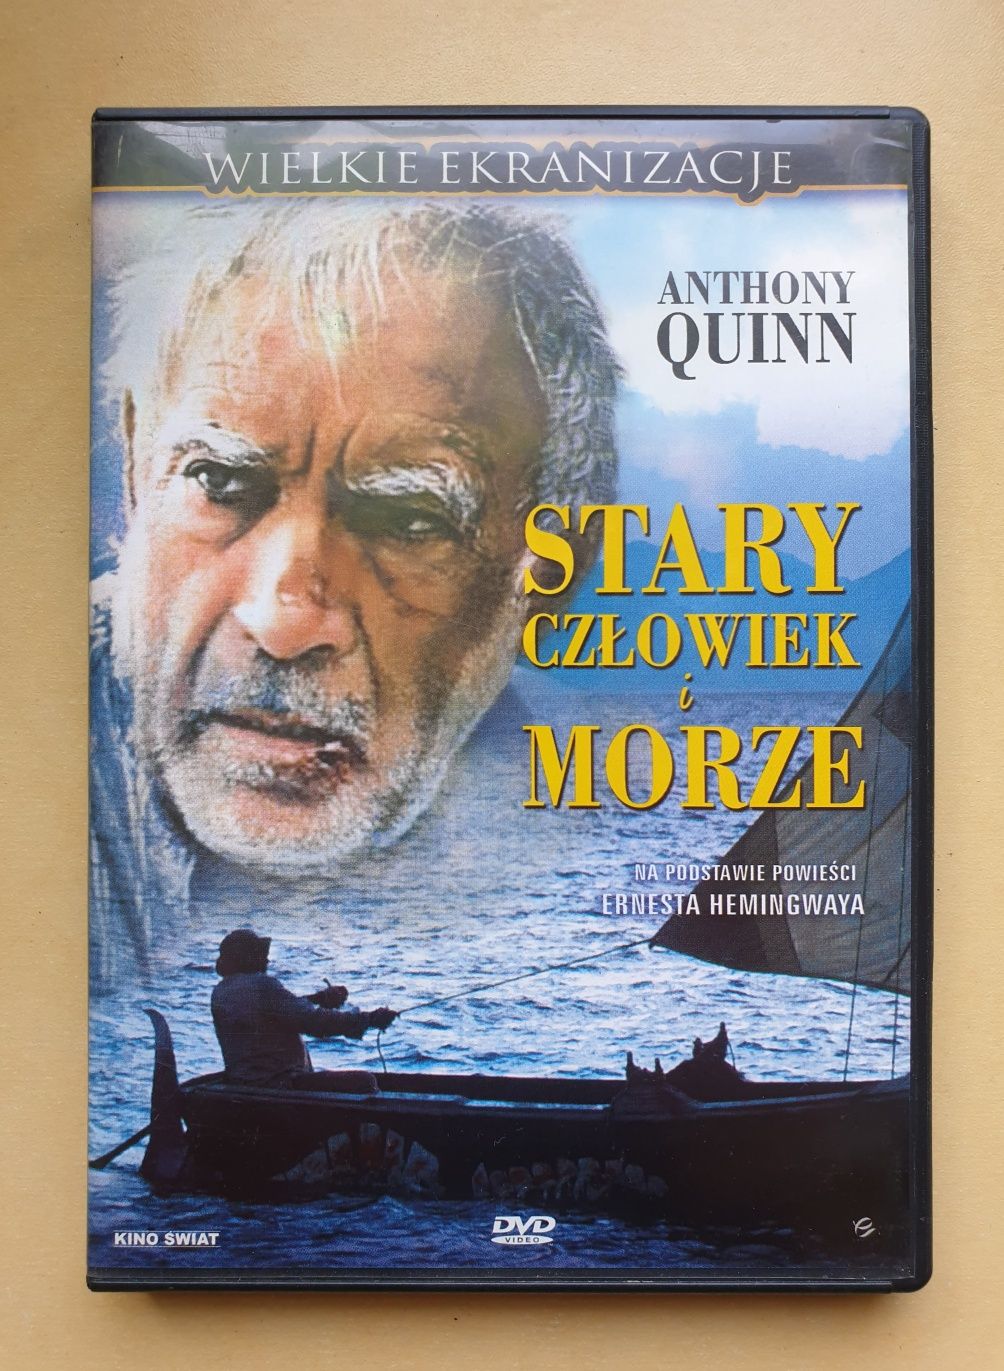 Film DVD Stary człowiek i morze Anthony Quinn